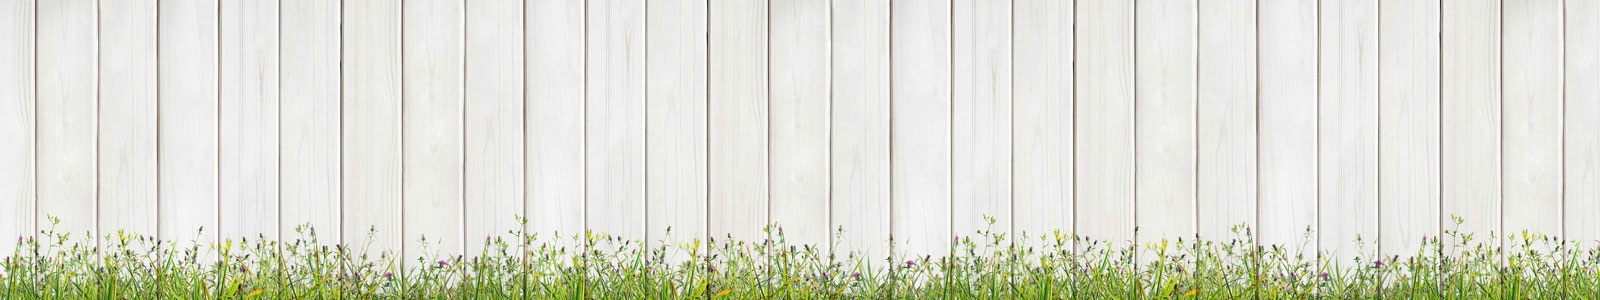 №4878 - Полевые цветы на фоне белой деревянной стены